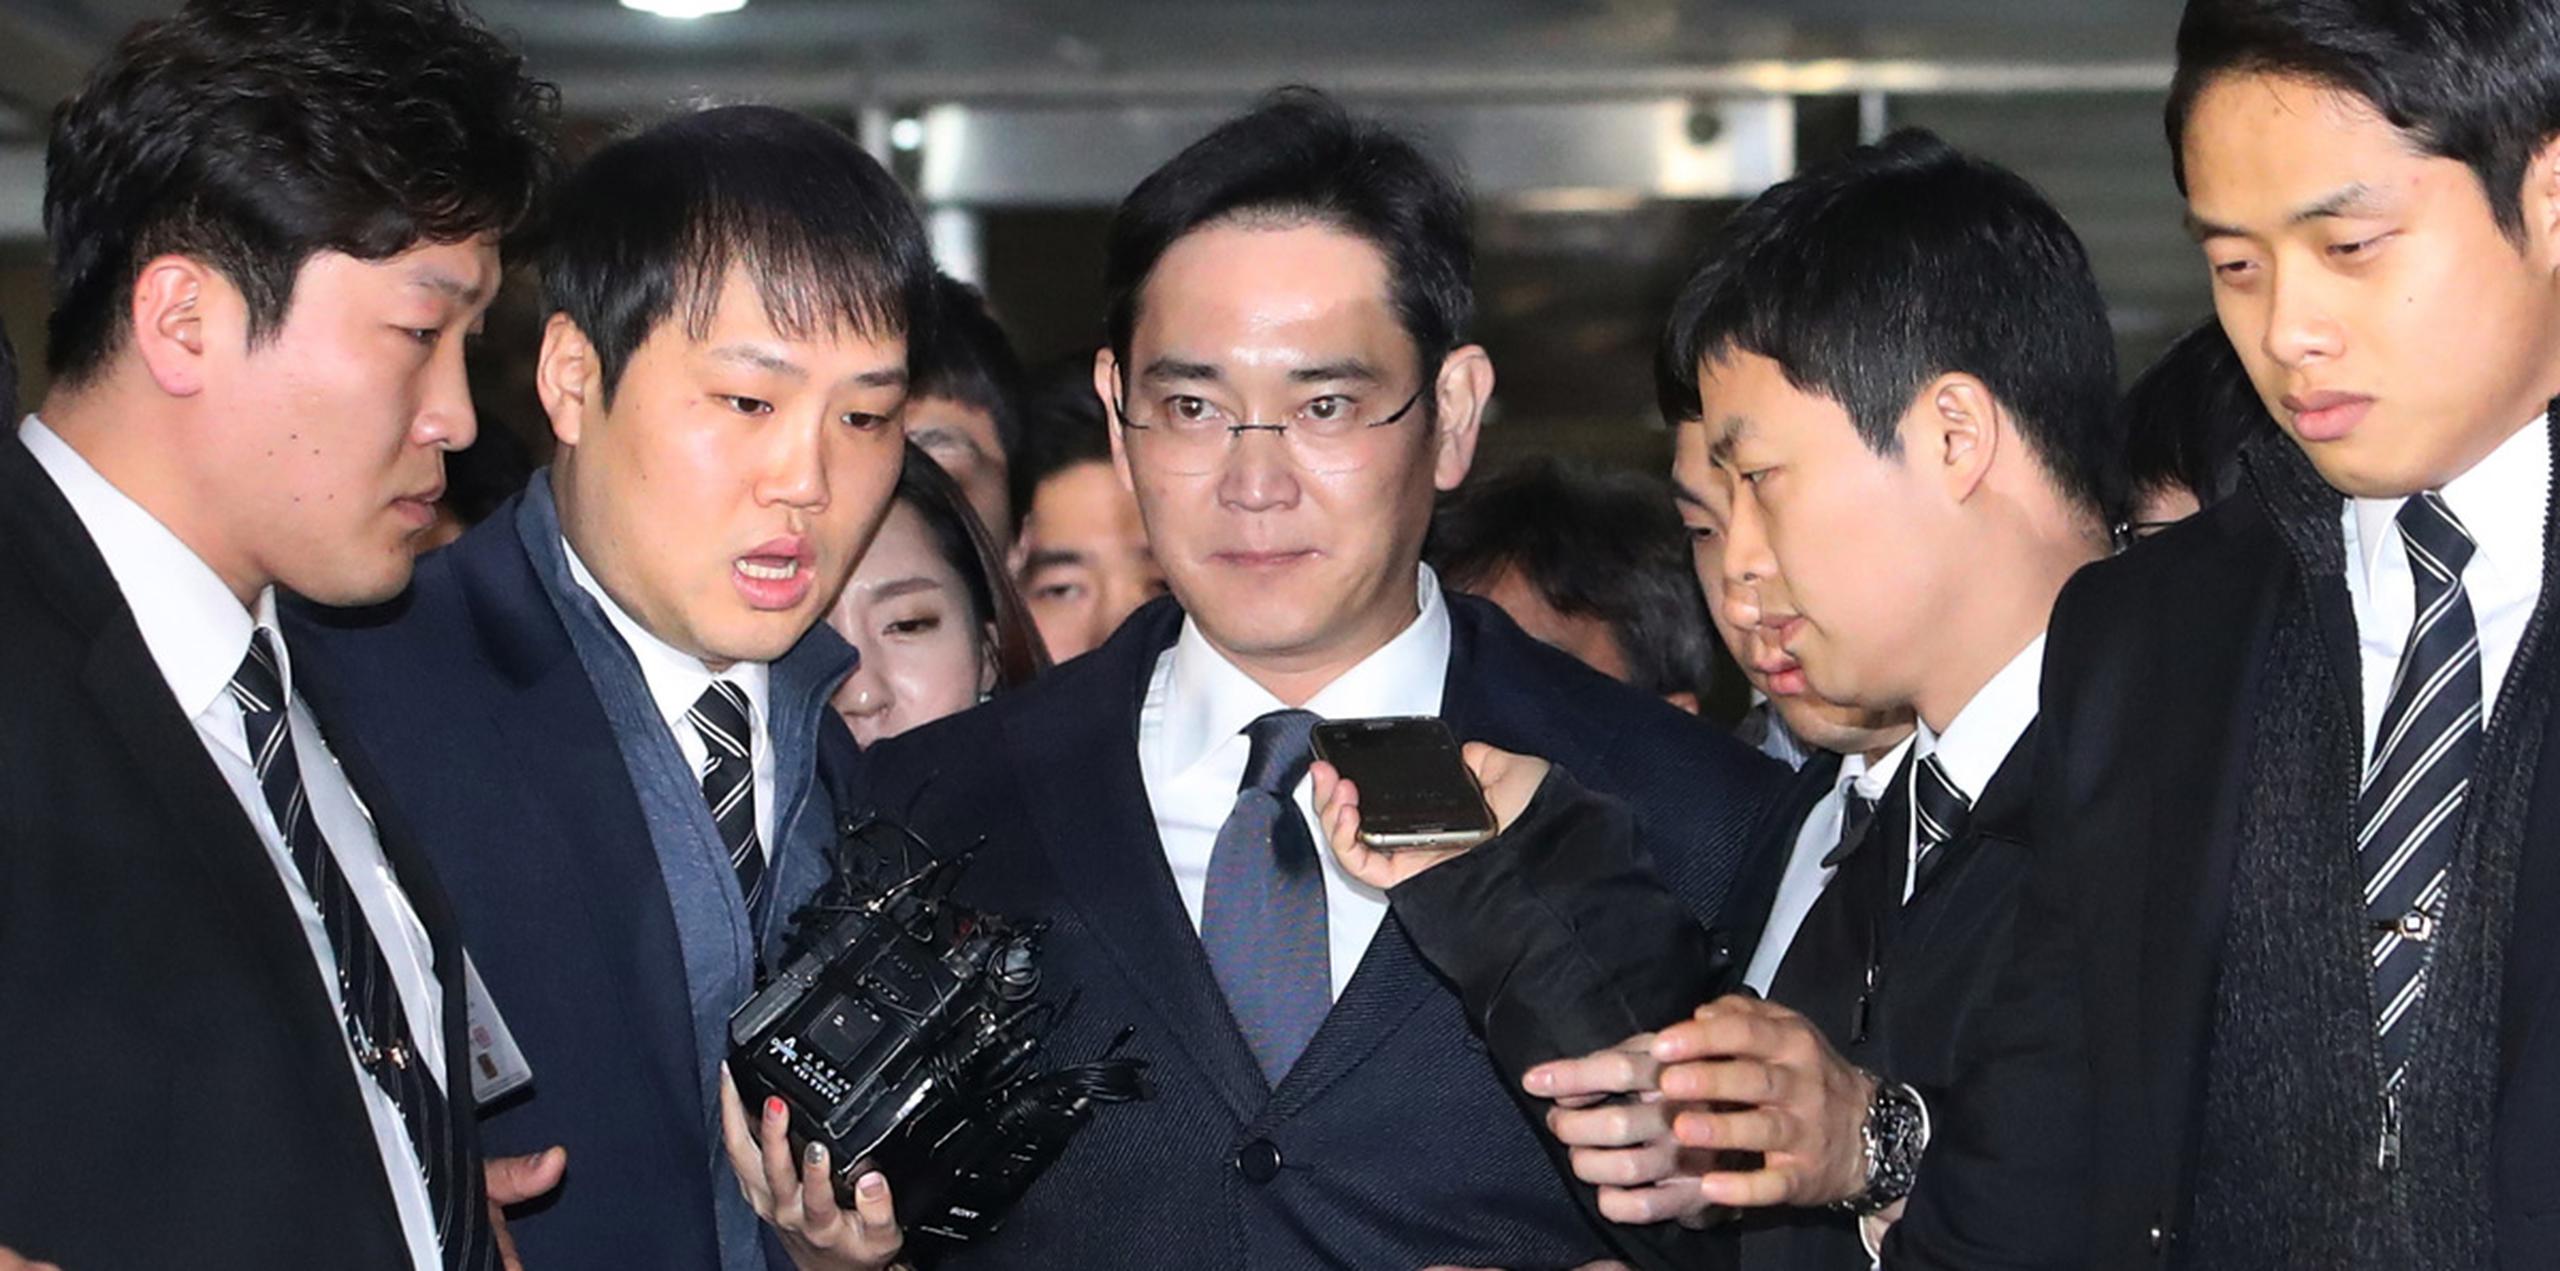 Lee Jae-yong, de 48 años, vicepresidente de Samsung Electronics y único hijo del presidente de Samsung, fue acusado de dar sobornos por un valor de 36 millones de dólares a la presidenta Park Geun-hye. (AP)